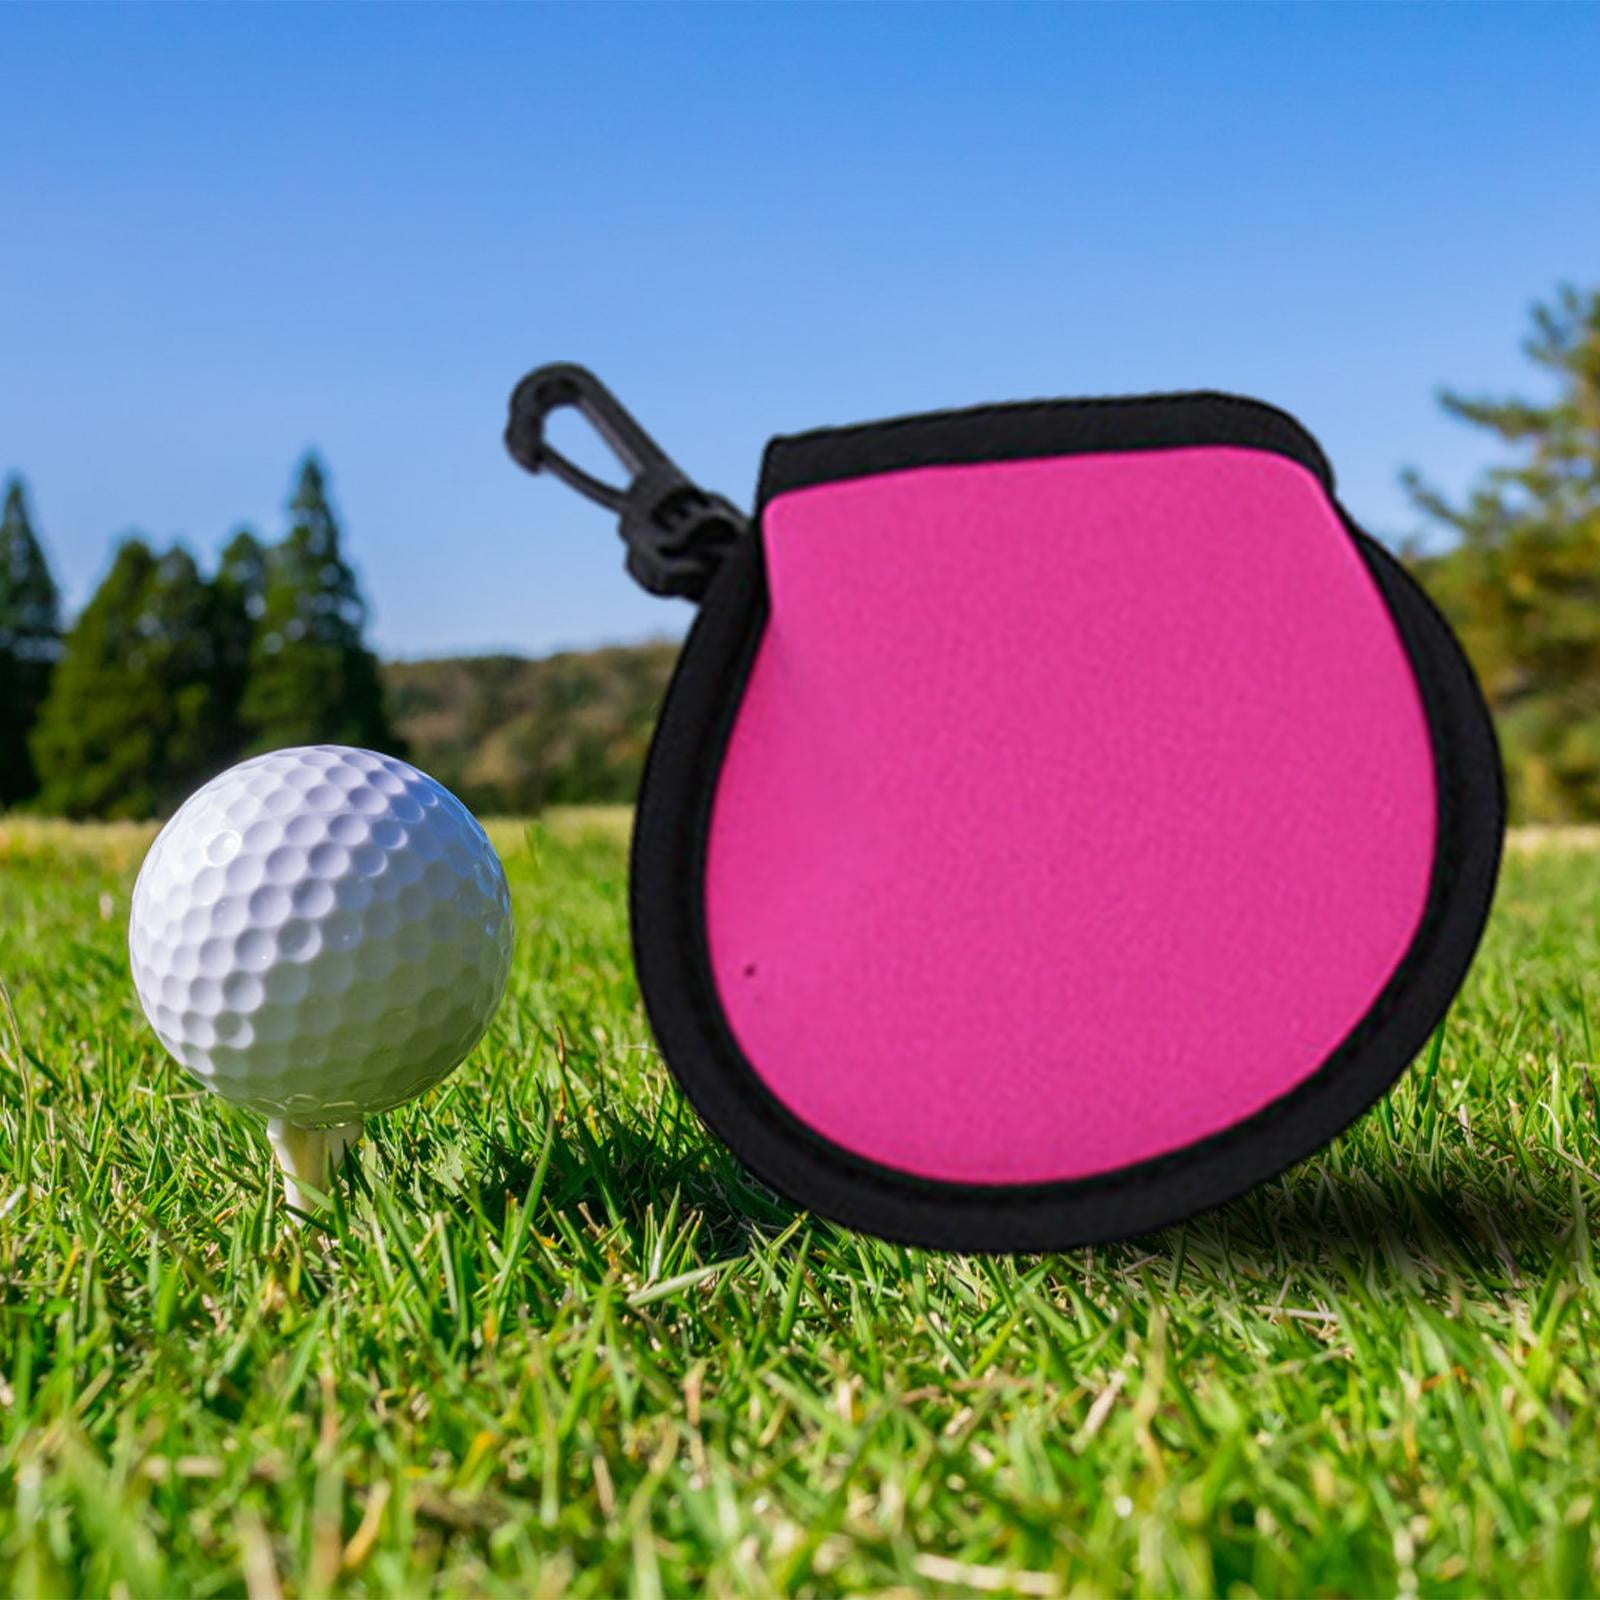 Cleaning balls. Шарик для гольфа. Самый дорогой шар для гольфа. Форма для мыла мяч для гольфа. Устройство для мытья мячей для гольфа.